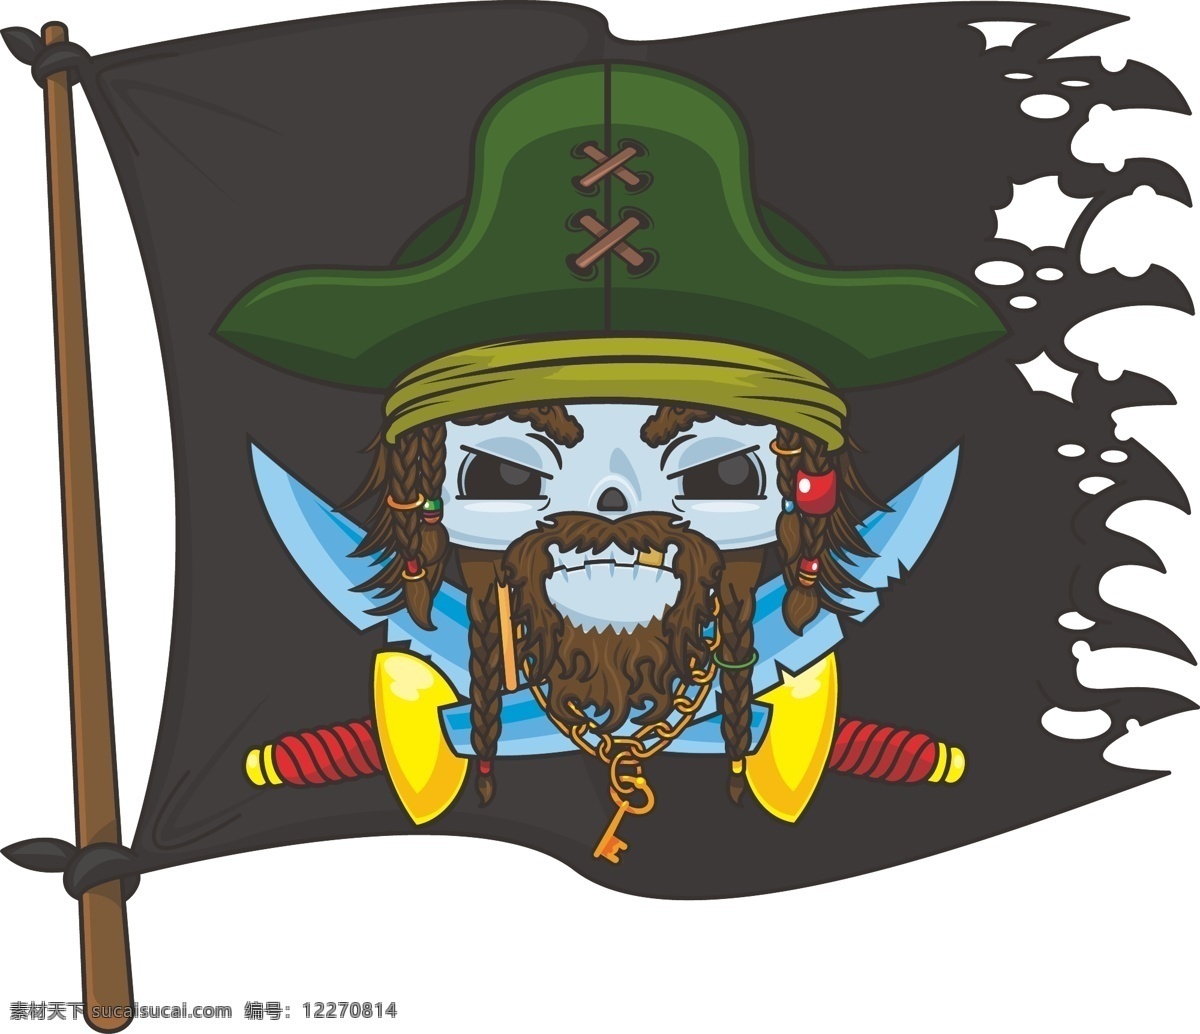 海盗 骷髅头 酒箱 旗子 火焰 纸张 人物 动漫人物 动漫动画